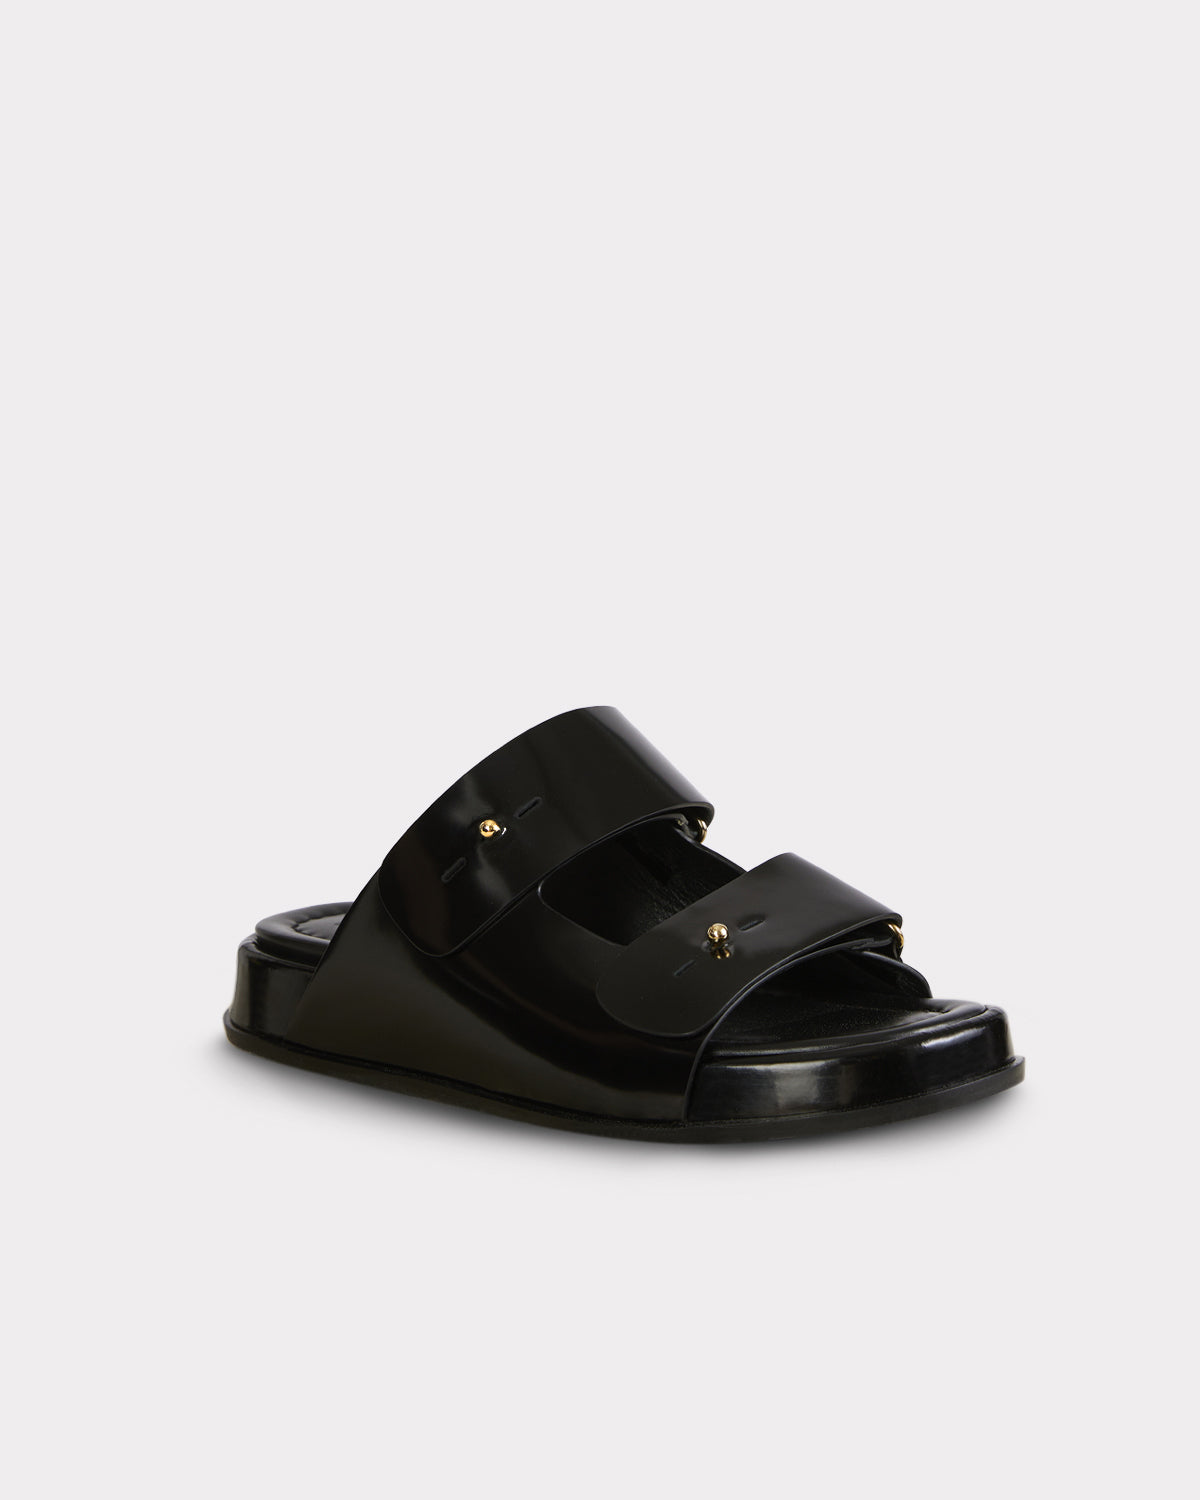 slow fashion black leather birkenstock sandal